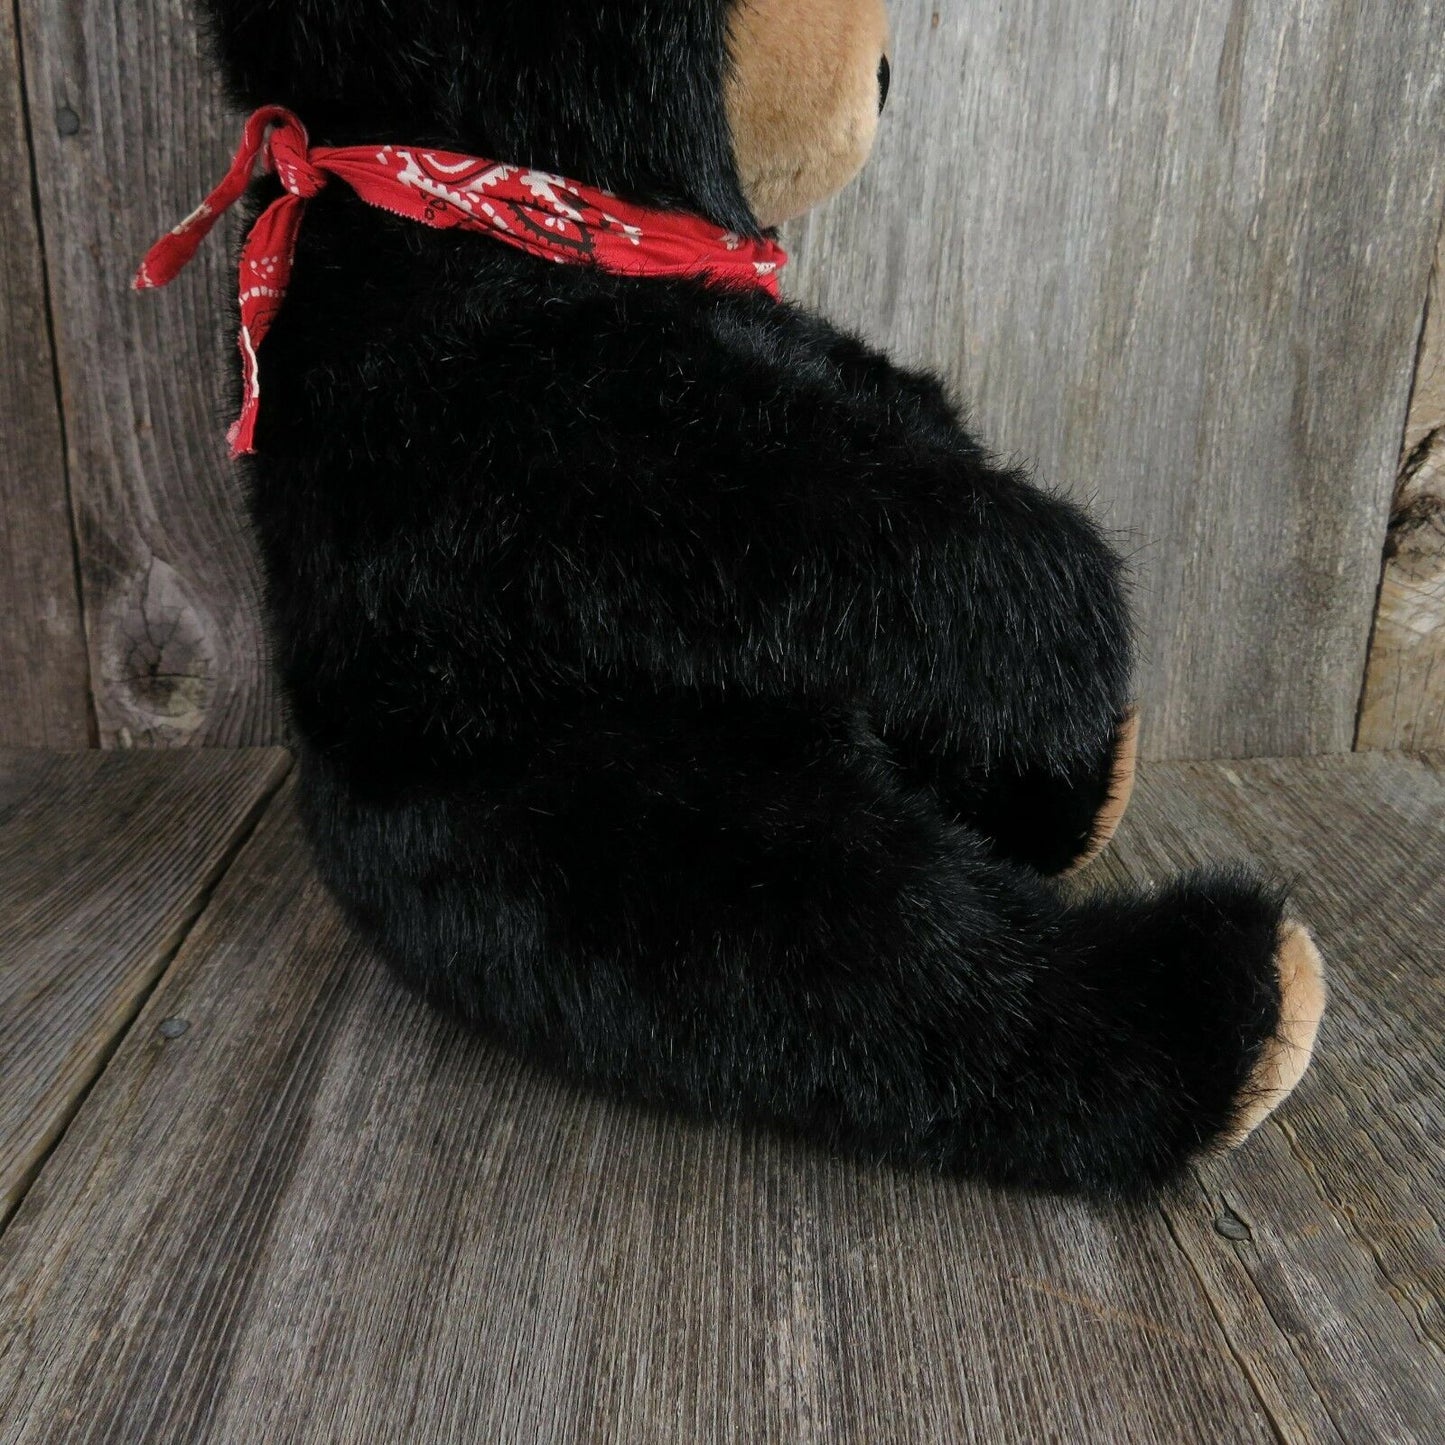 Vintage Railroad Teddy Bear Plush Calistoga Series California Stuffed Animal Engineer - At Grandma's Table